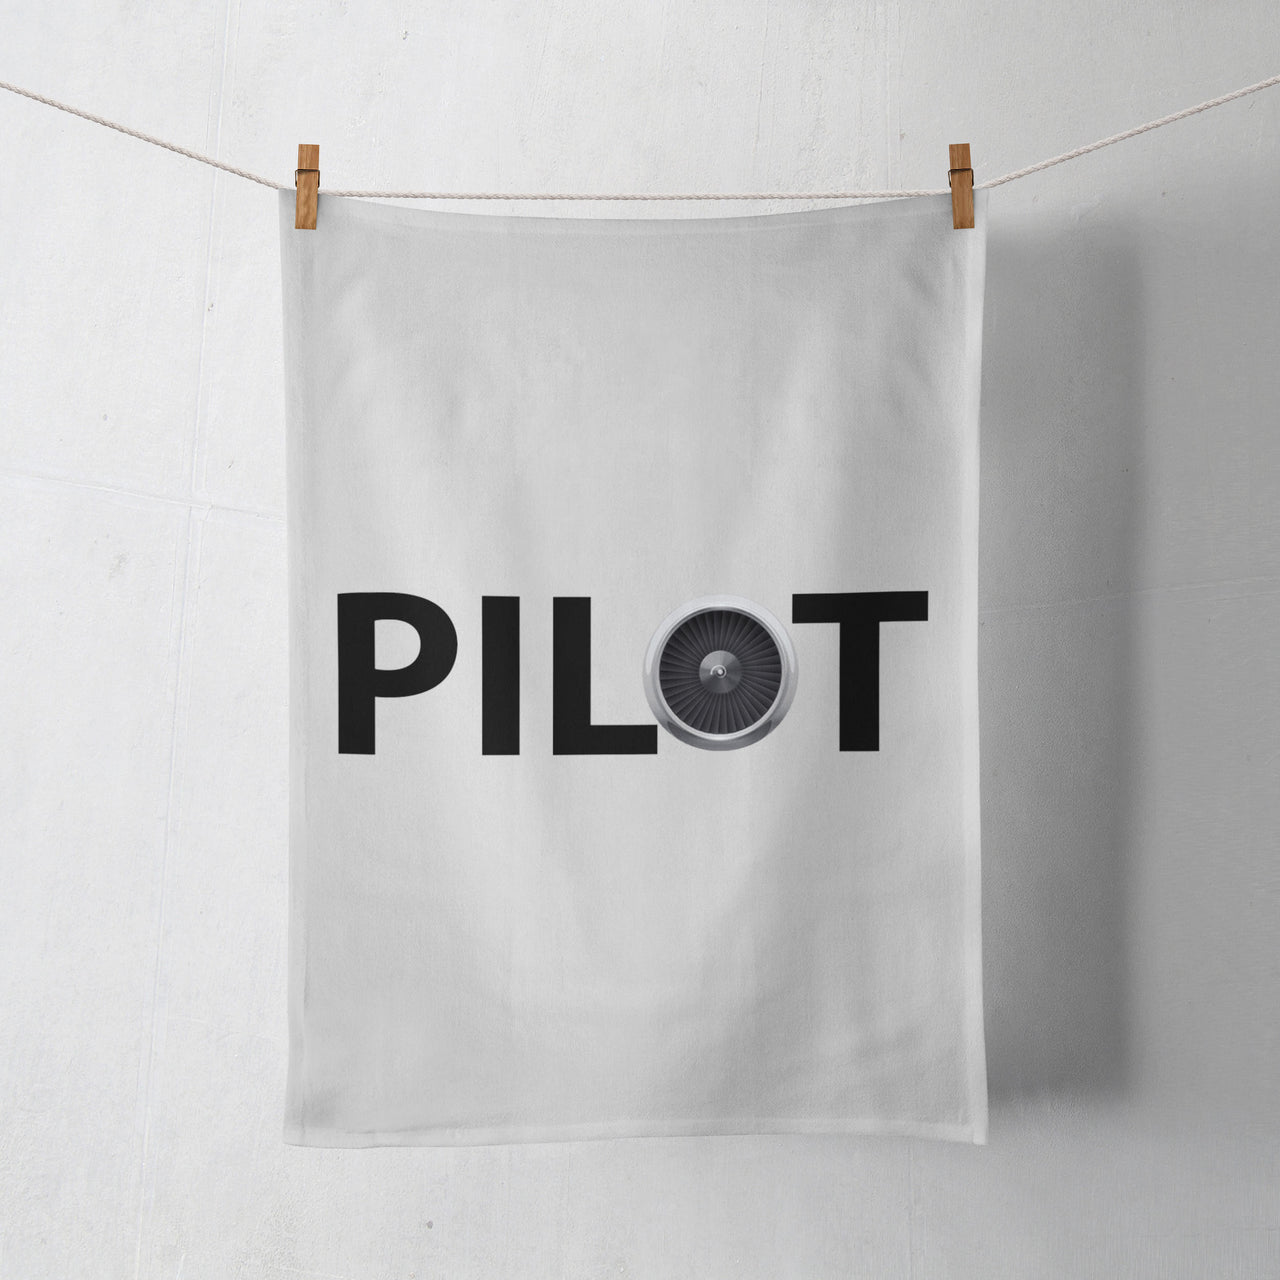 Pilot & Jet Engine Designed Towels